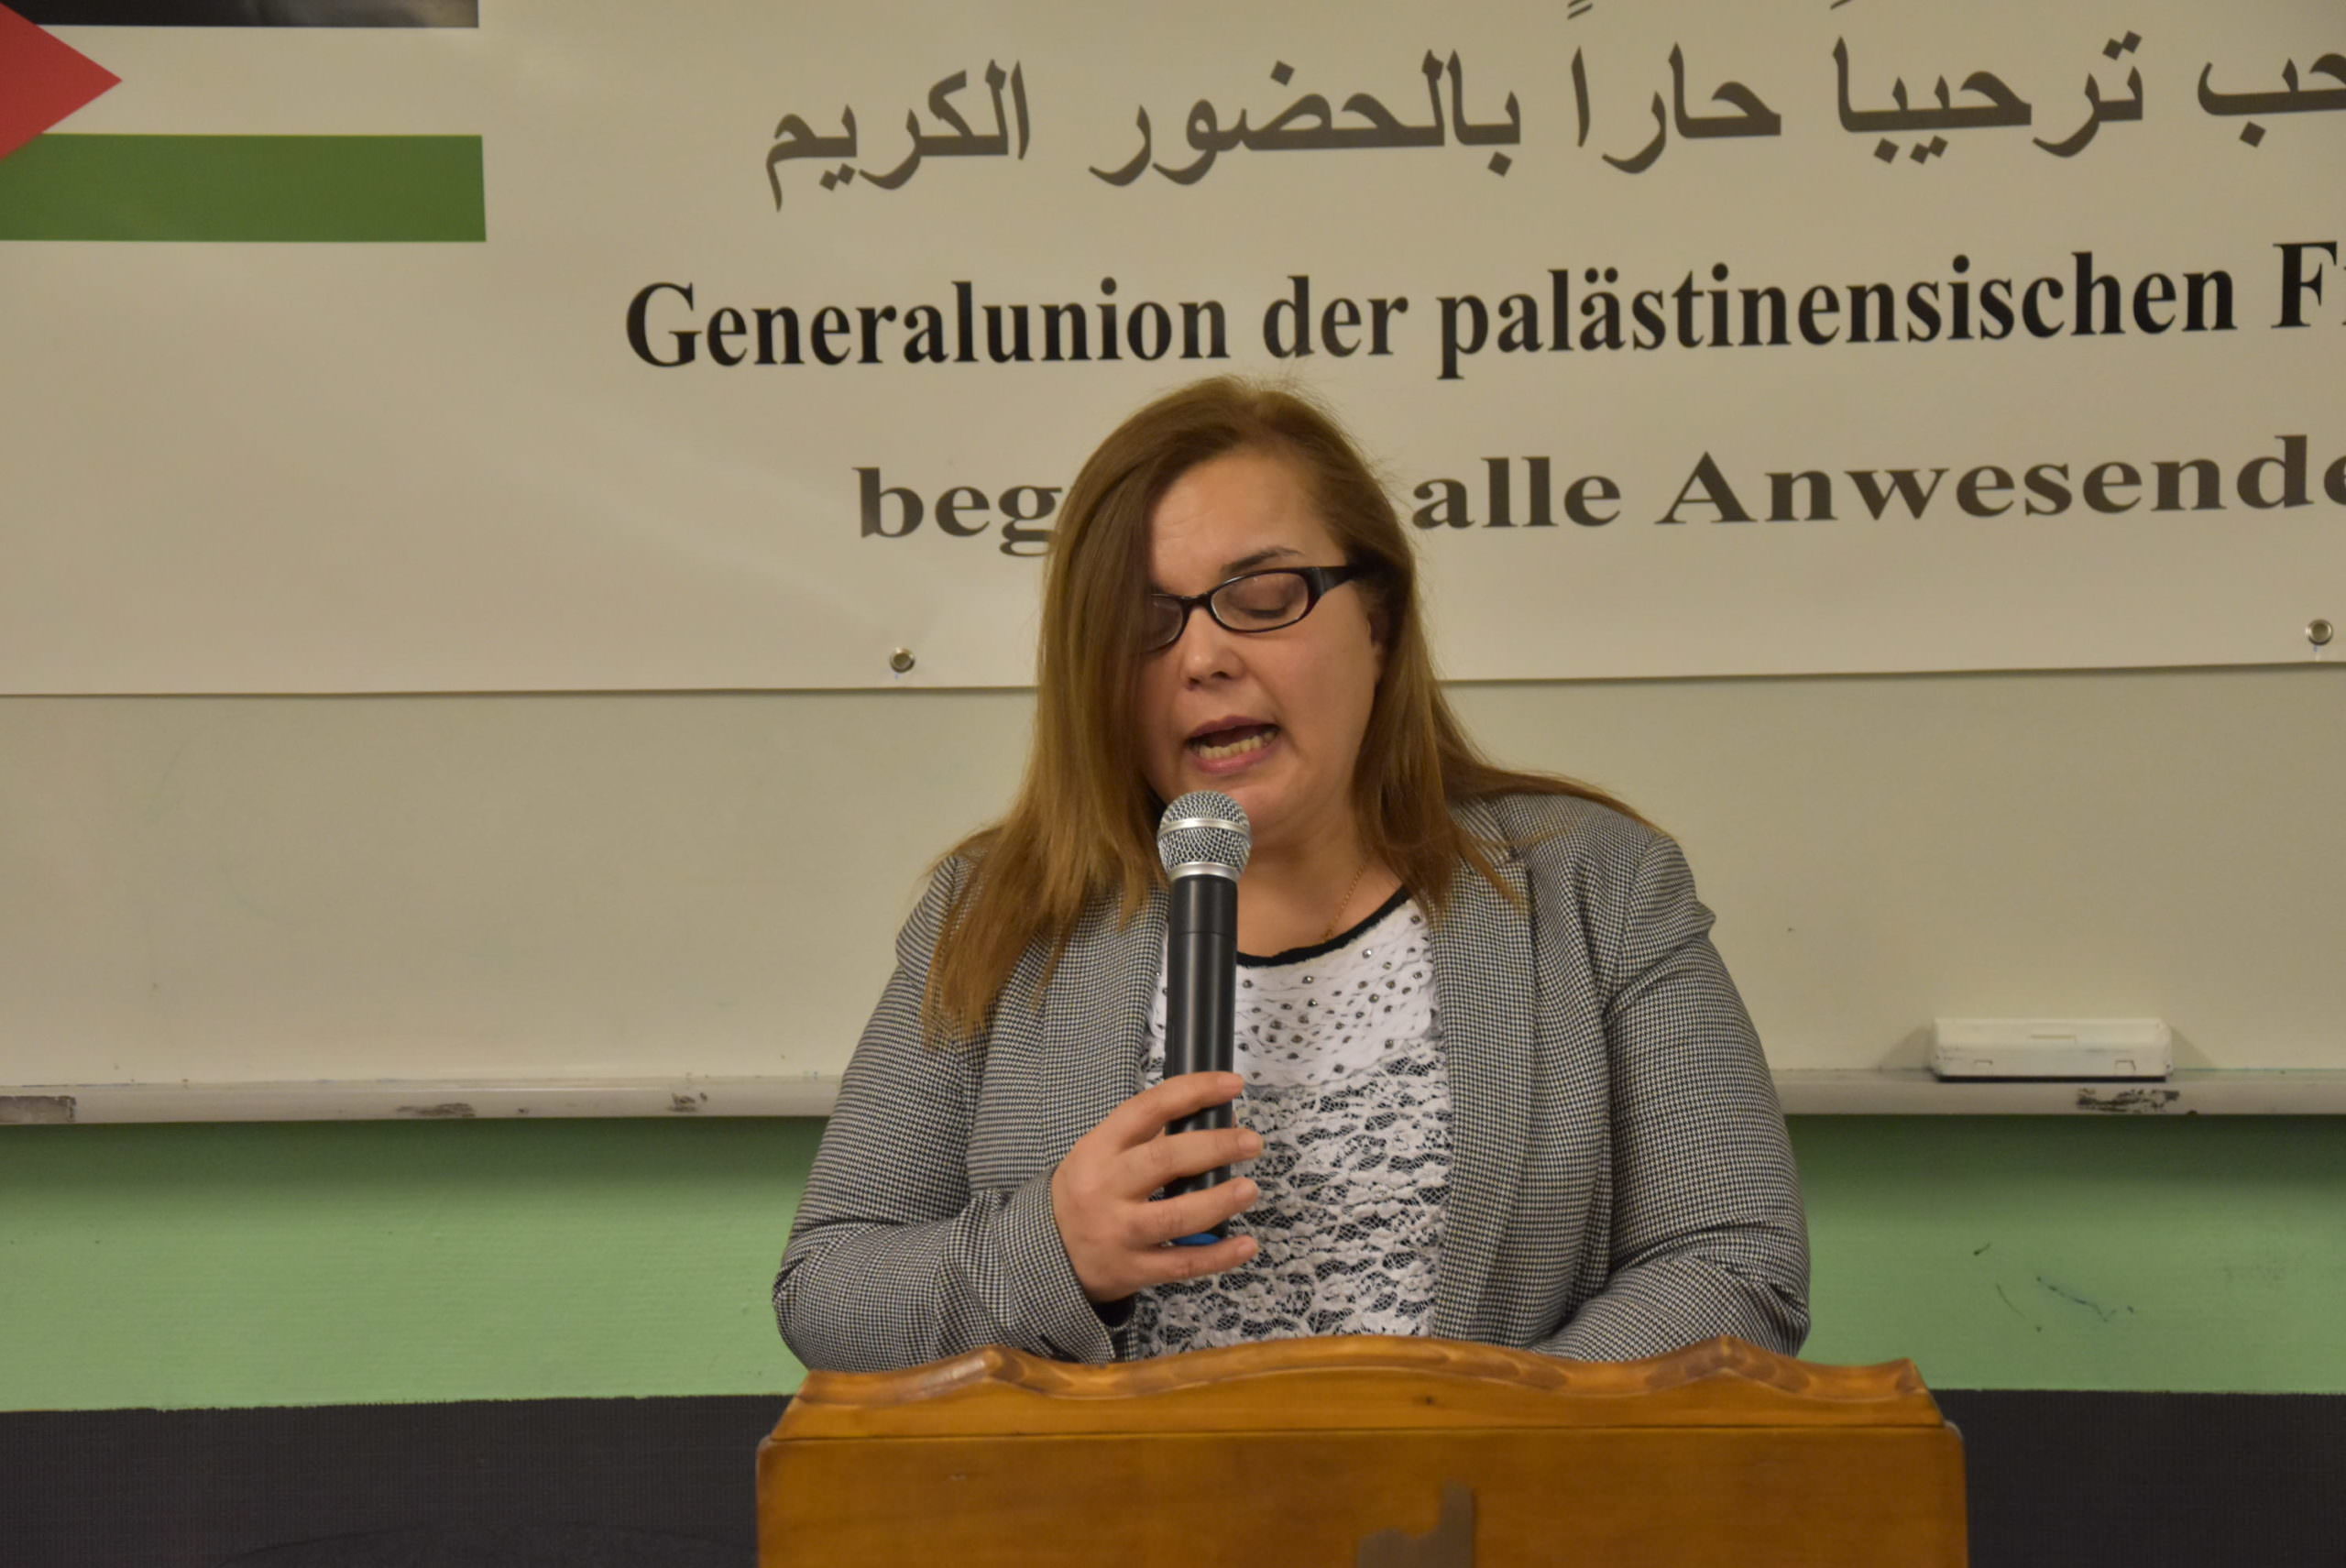 الإتحاد العام للمرأة الفلسطينية - ألمانيا يقيم إحتفالاً كبيراً بمناسبة يوم المرأة العالمي